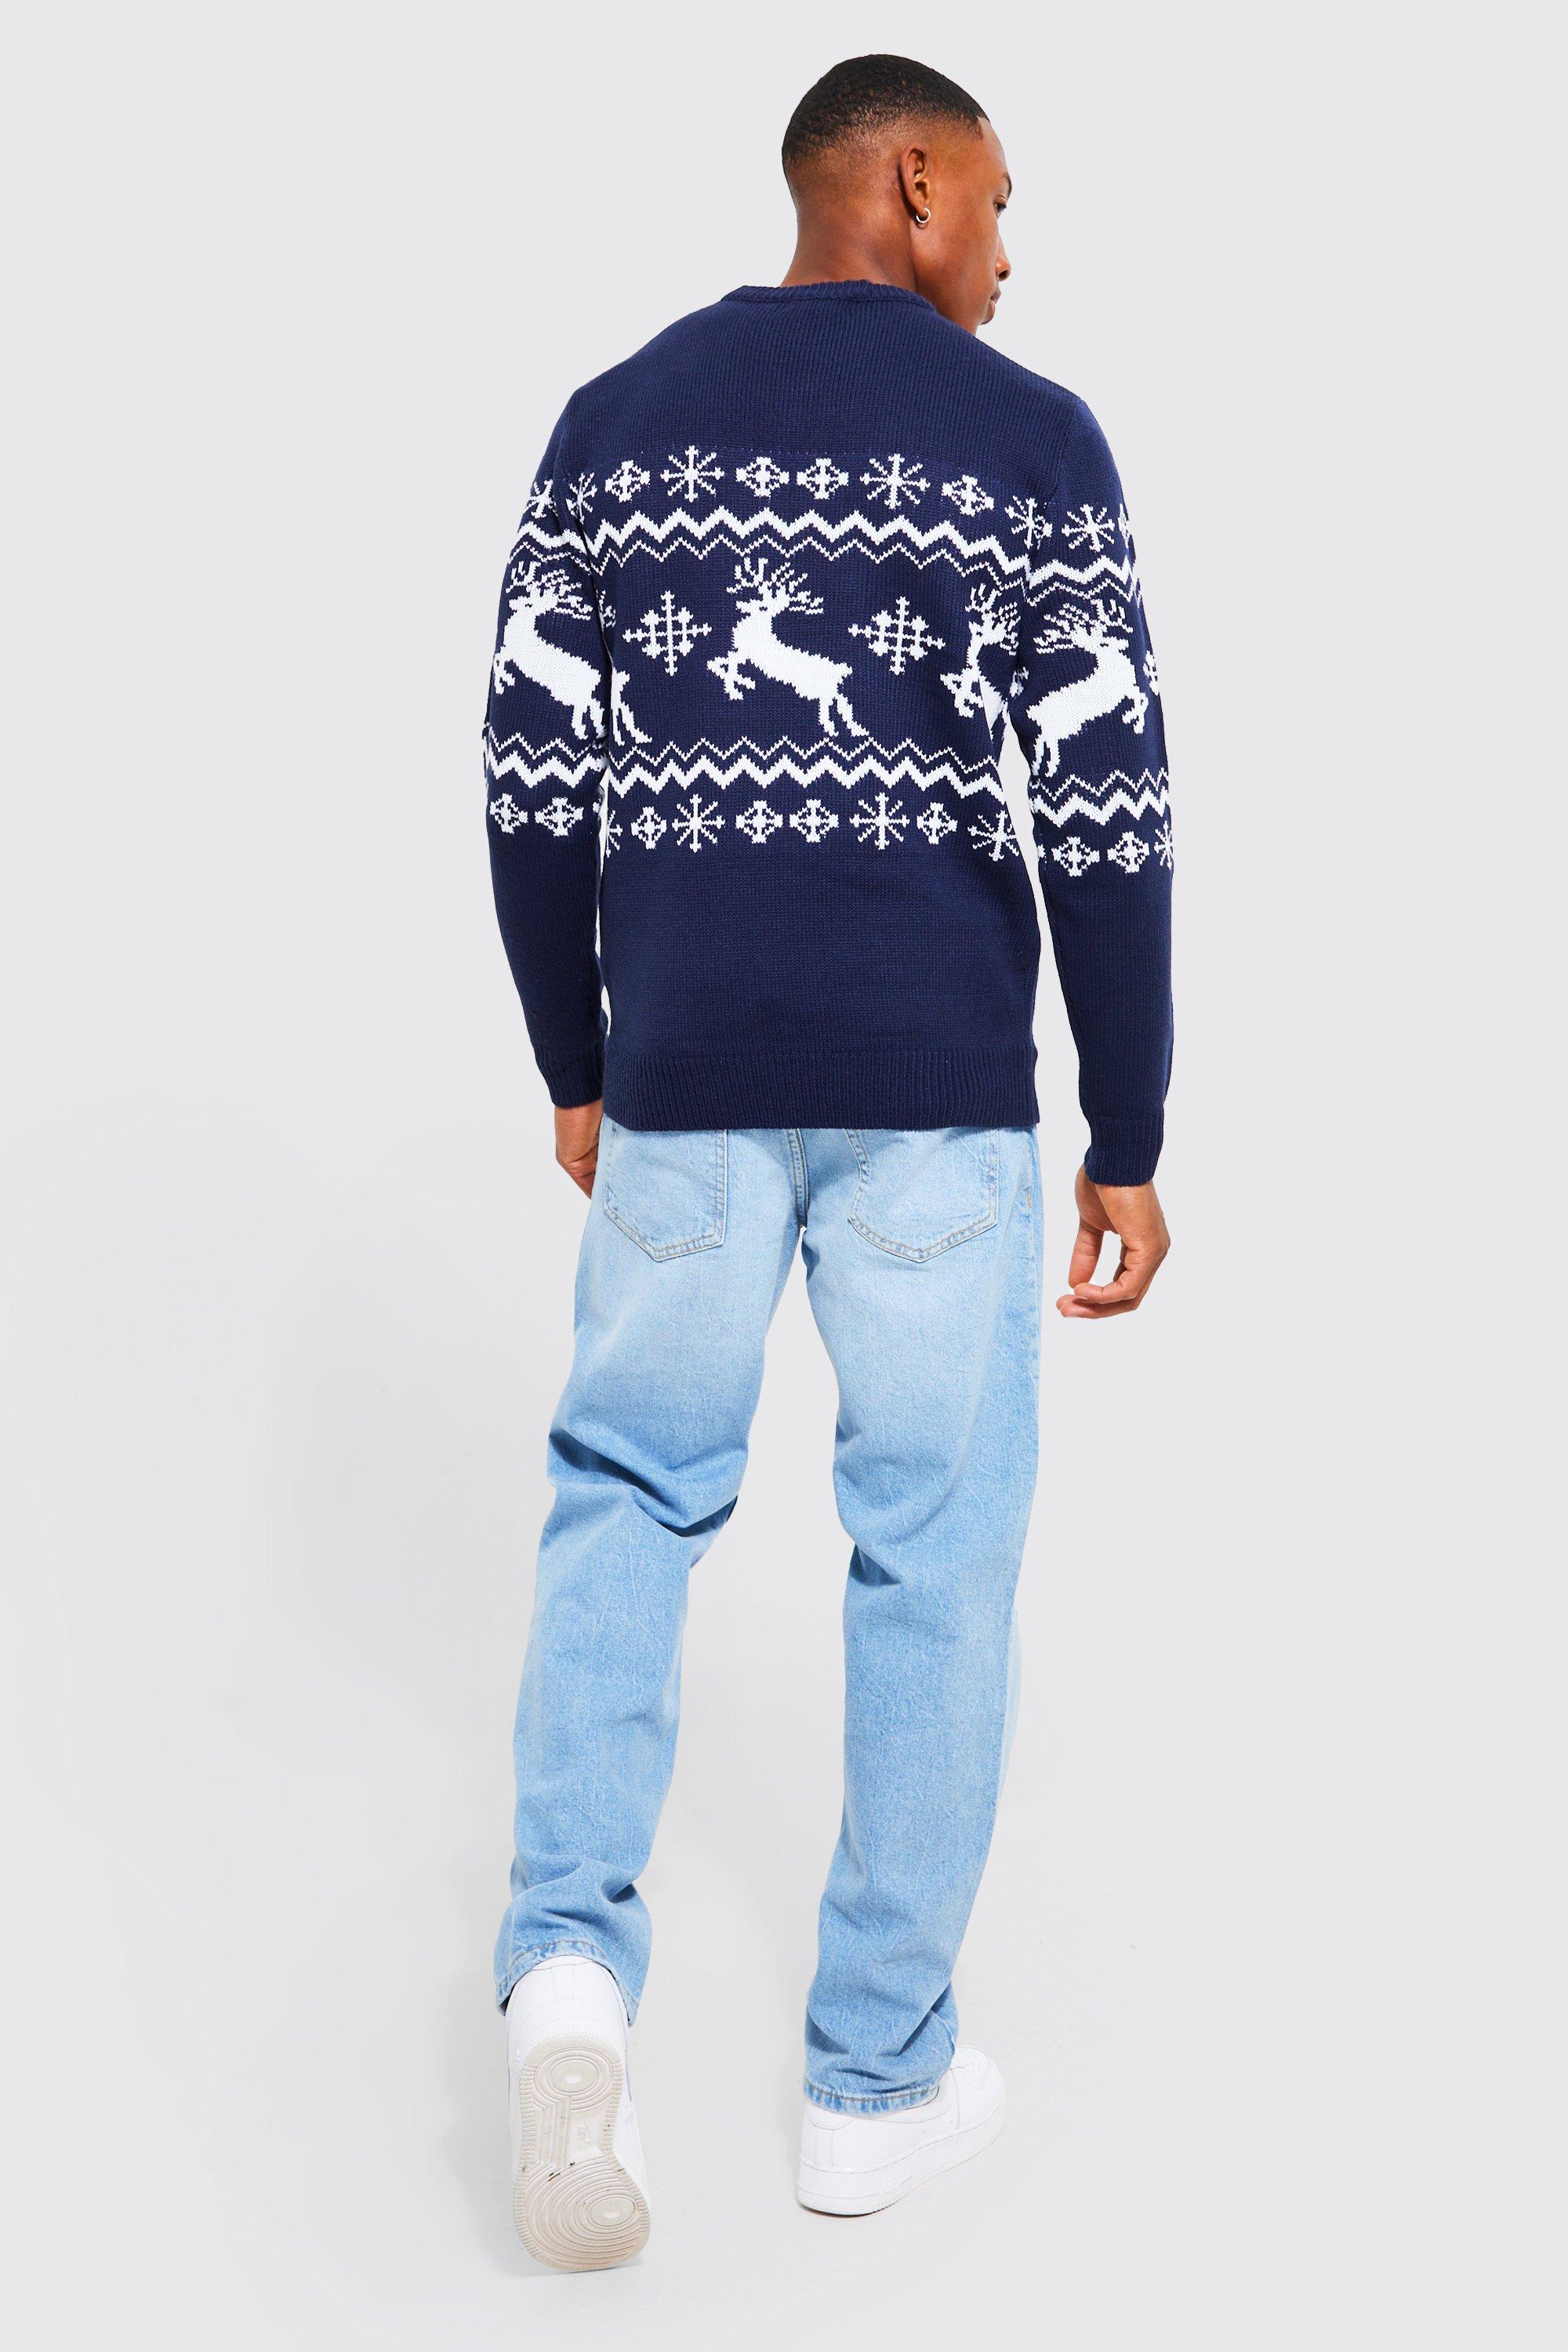 Muscle Fit Reindeer Fair Isle Christmas Sweater